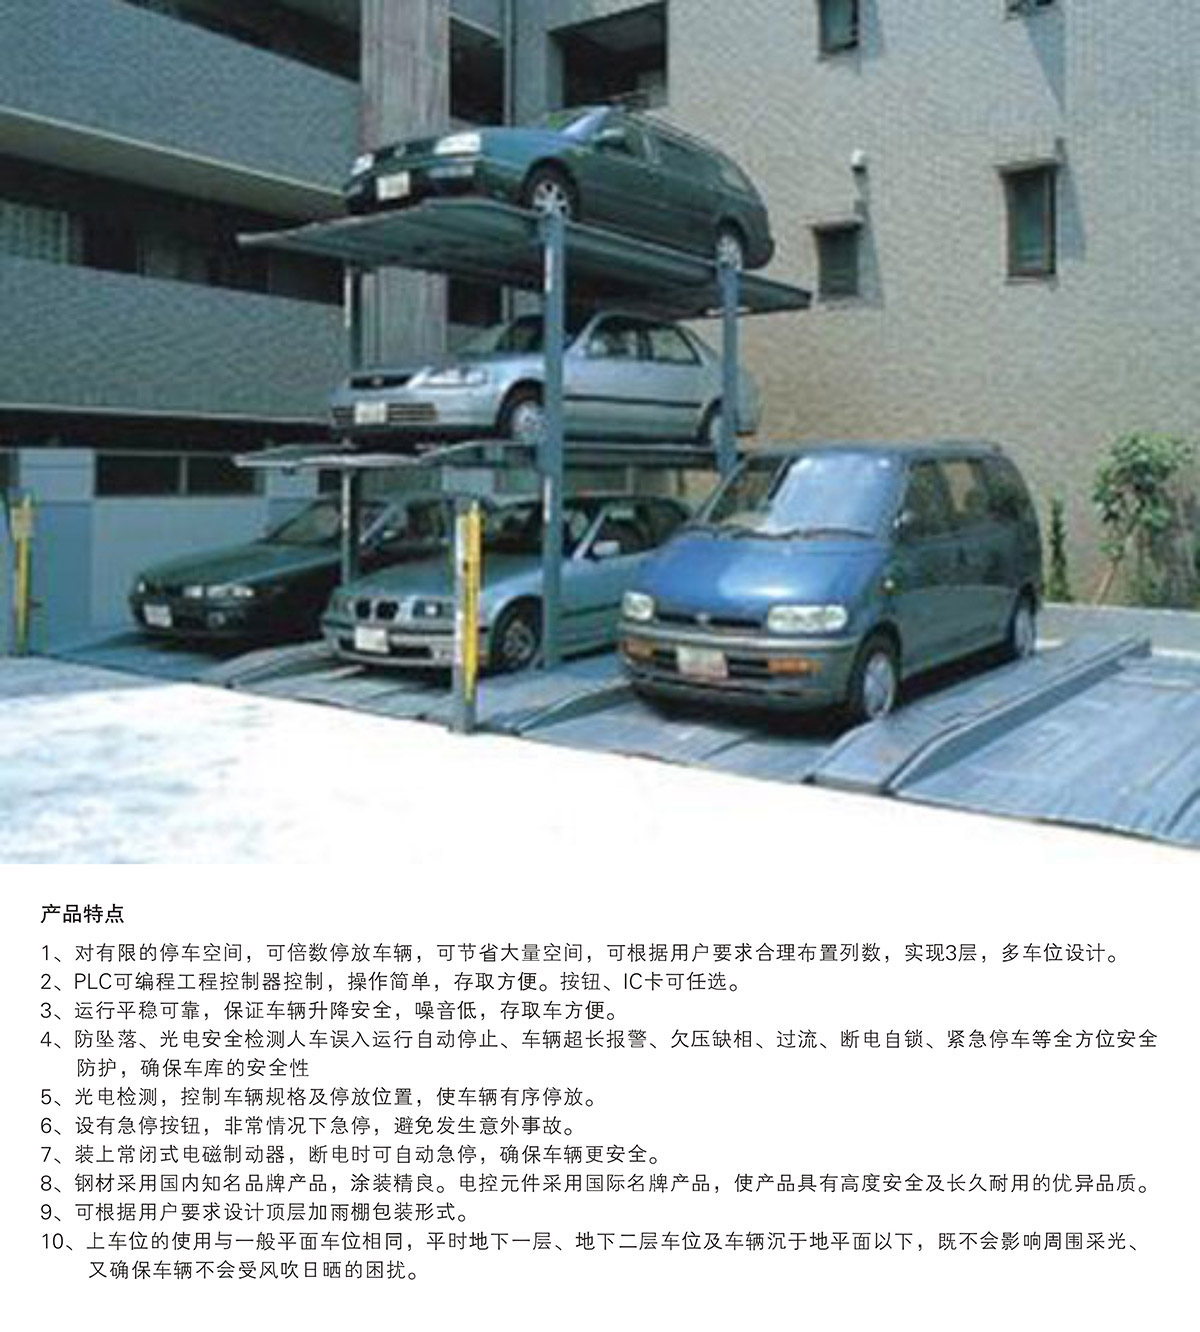 07PJS3-D2三层地坑简易升降机械式立体停车设备产品特点.jpg